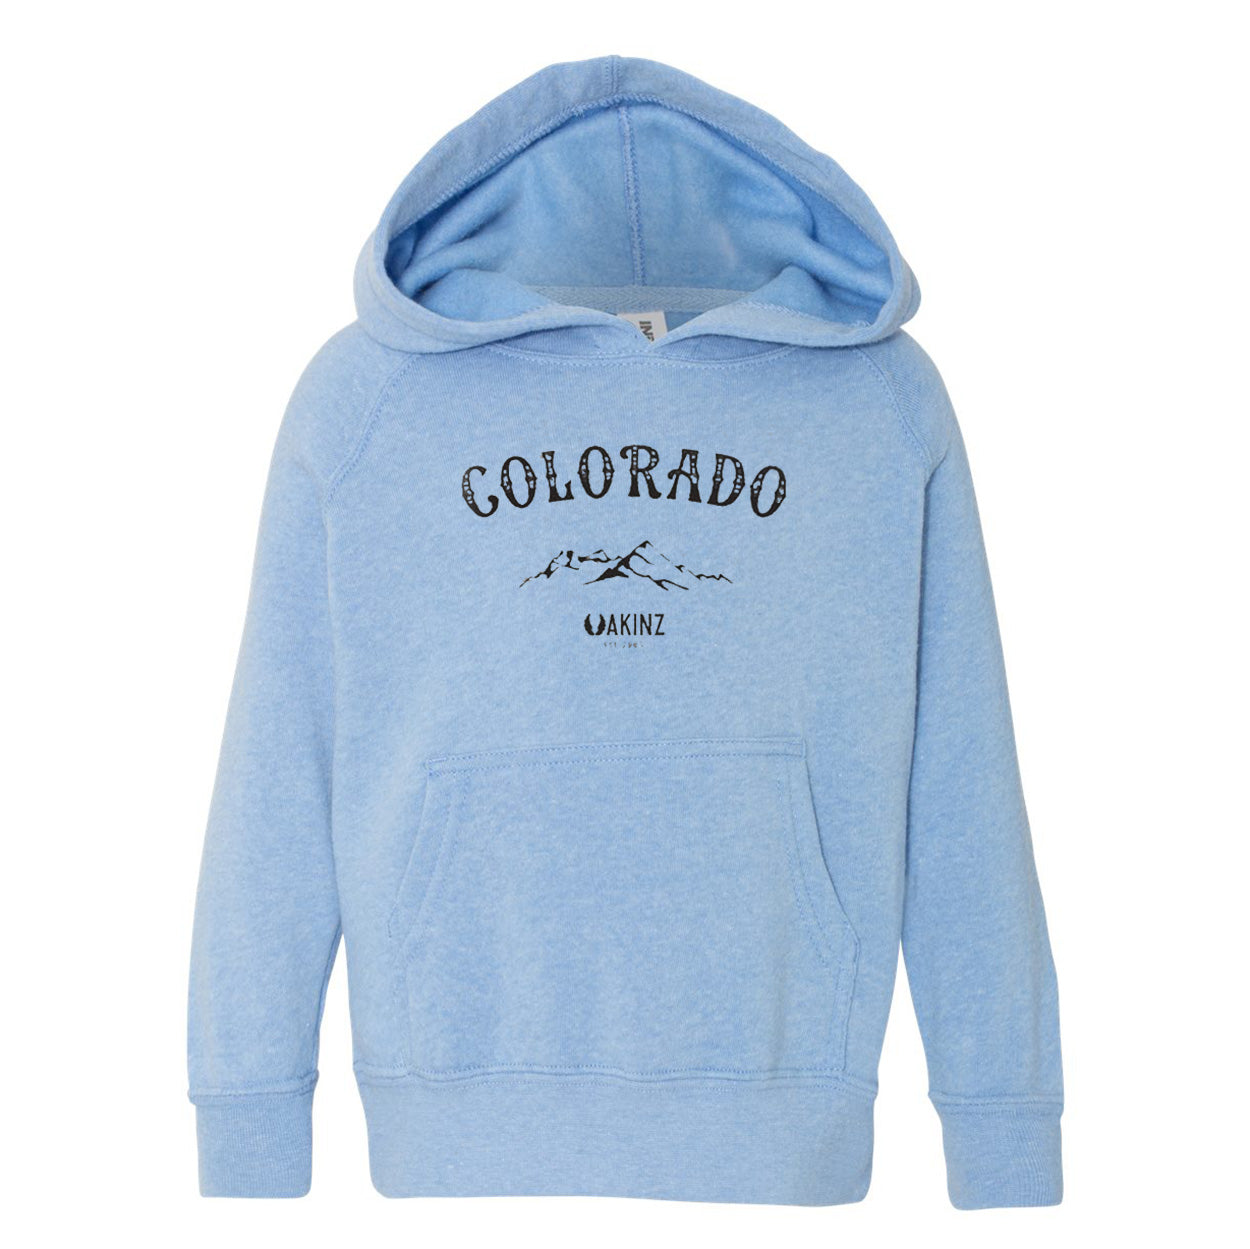 Colorado-pride-youth-hoodie-pacific-blue.jpg